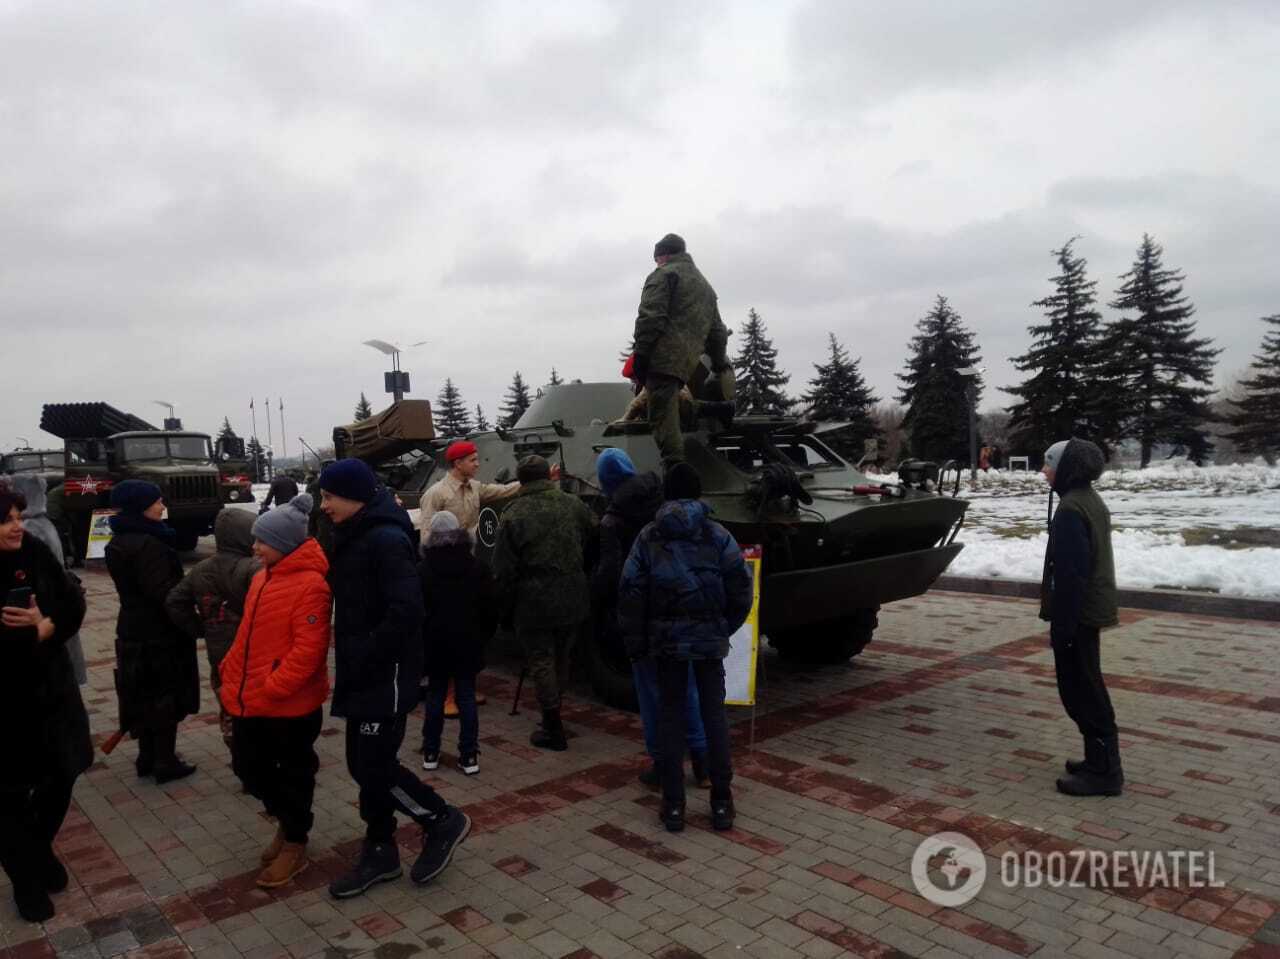 На Донбассе террористы организовали "выставку" вооружения